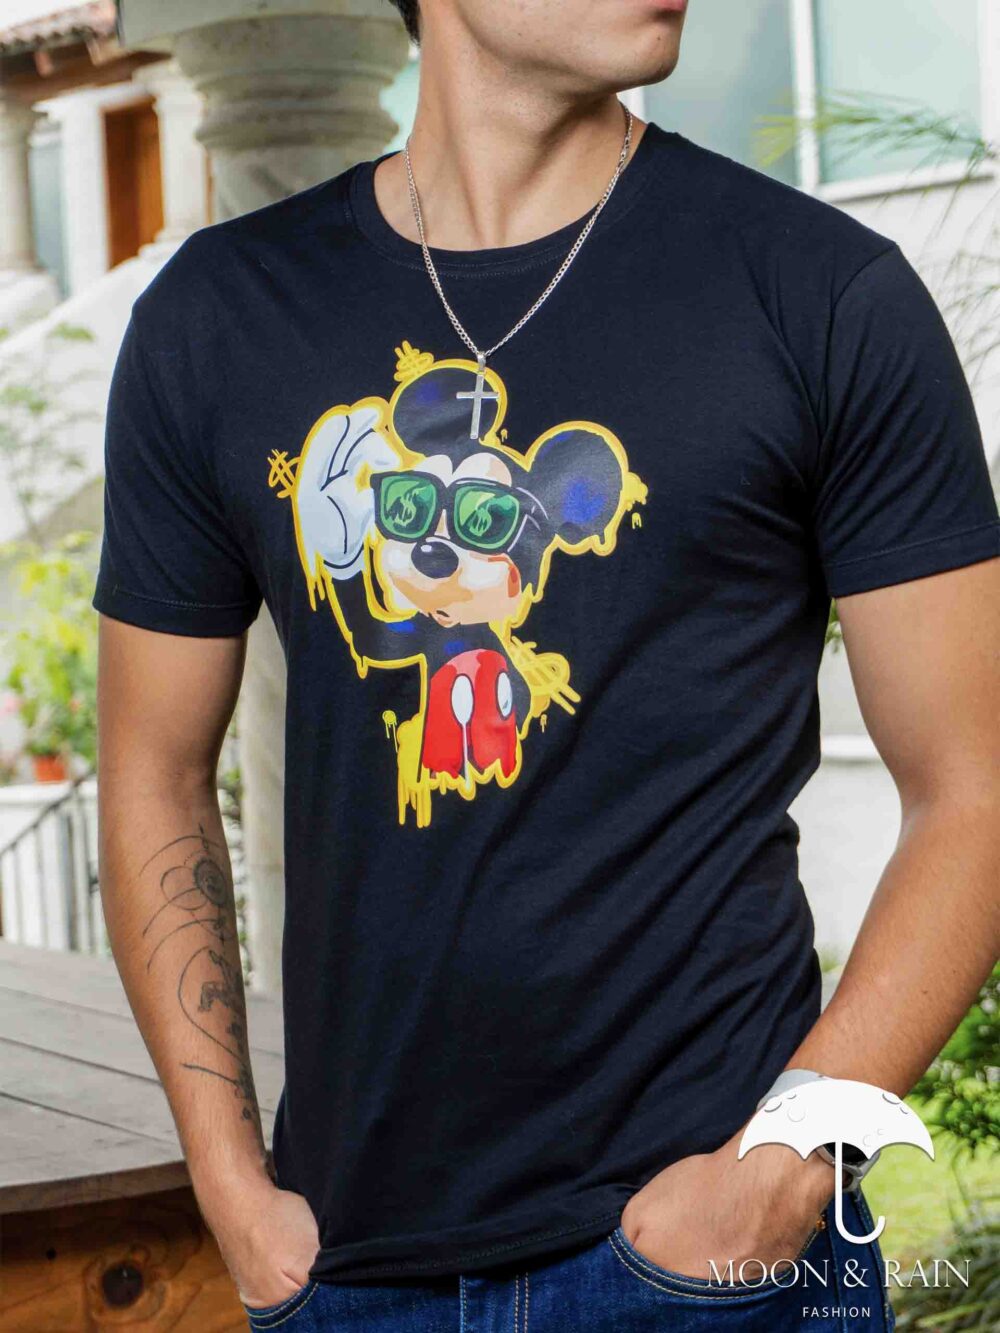 Playera Hombre Casual Negra Mickey Mouse Fashion 2